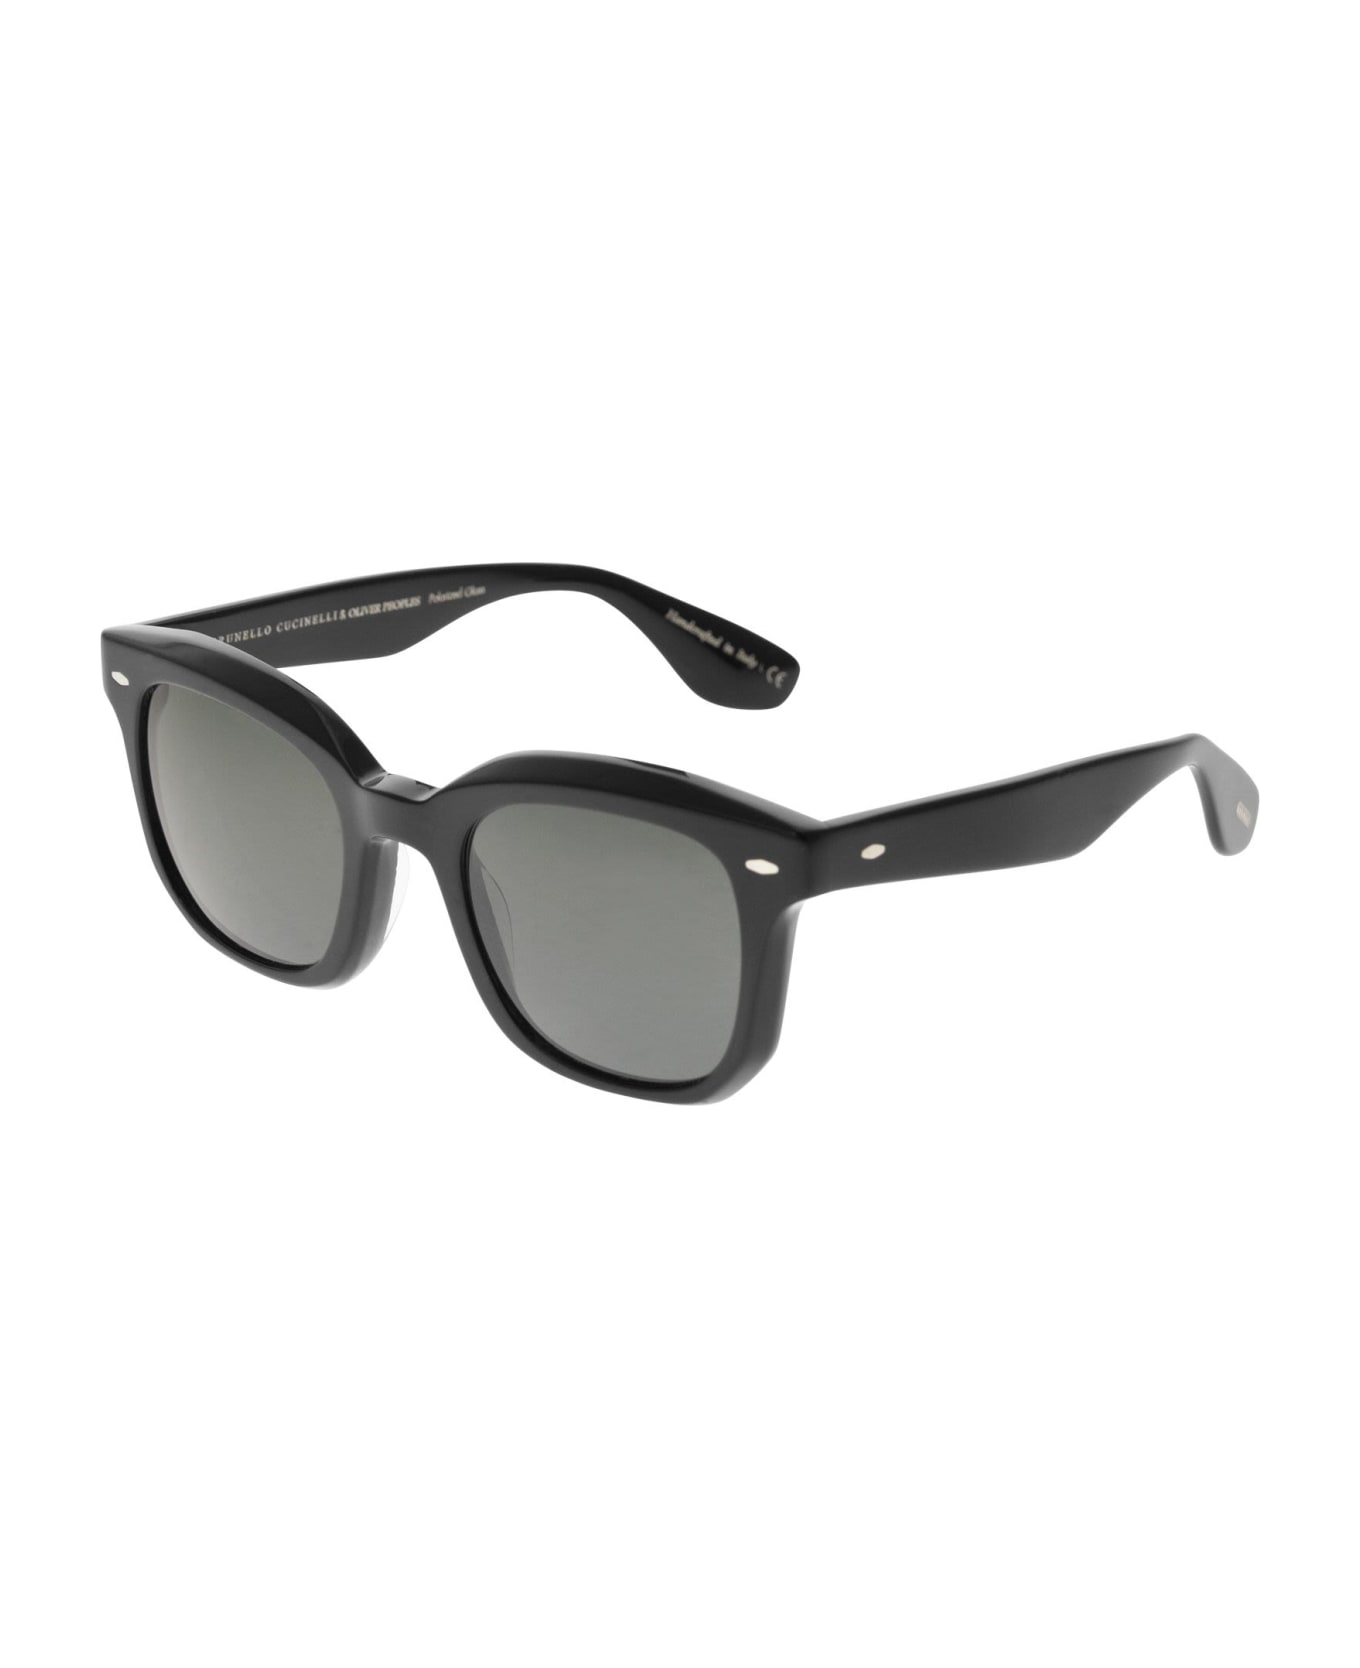 Brunello Cucinelli Nino Acetate Sunglasses With Polarised Lenses - Black サングラス